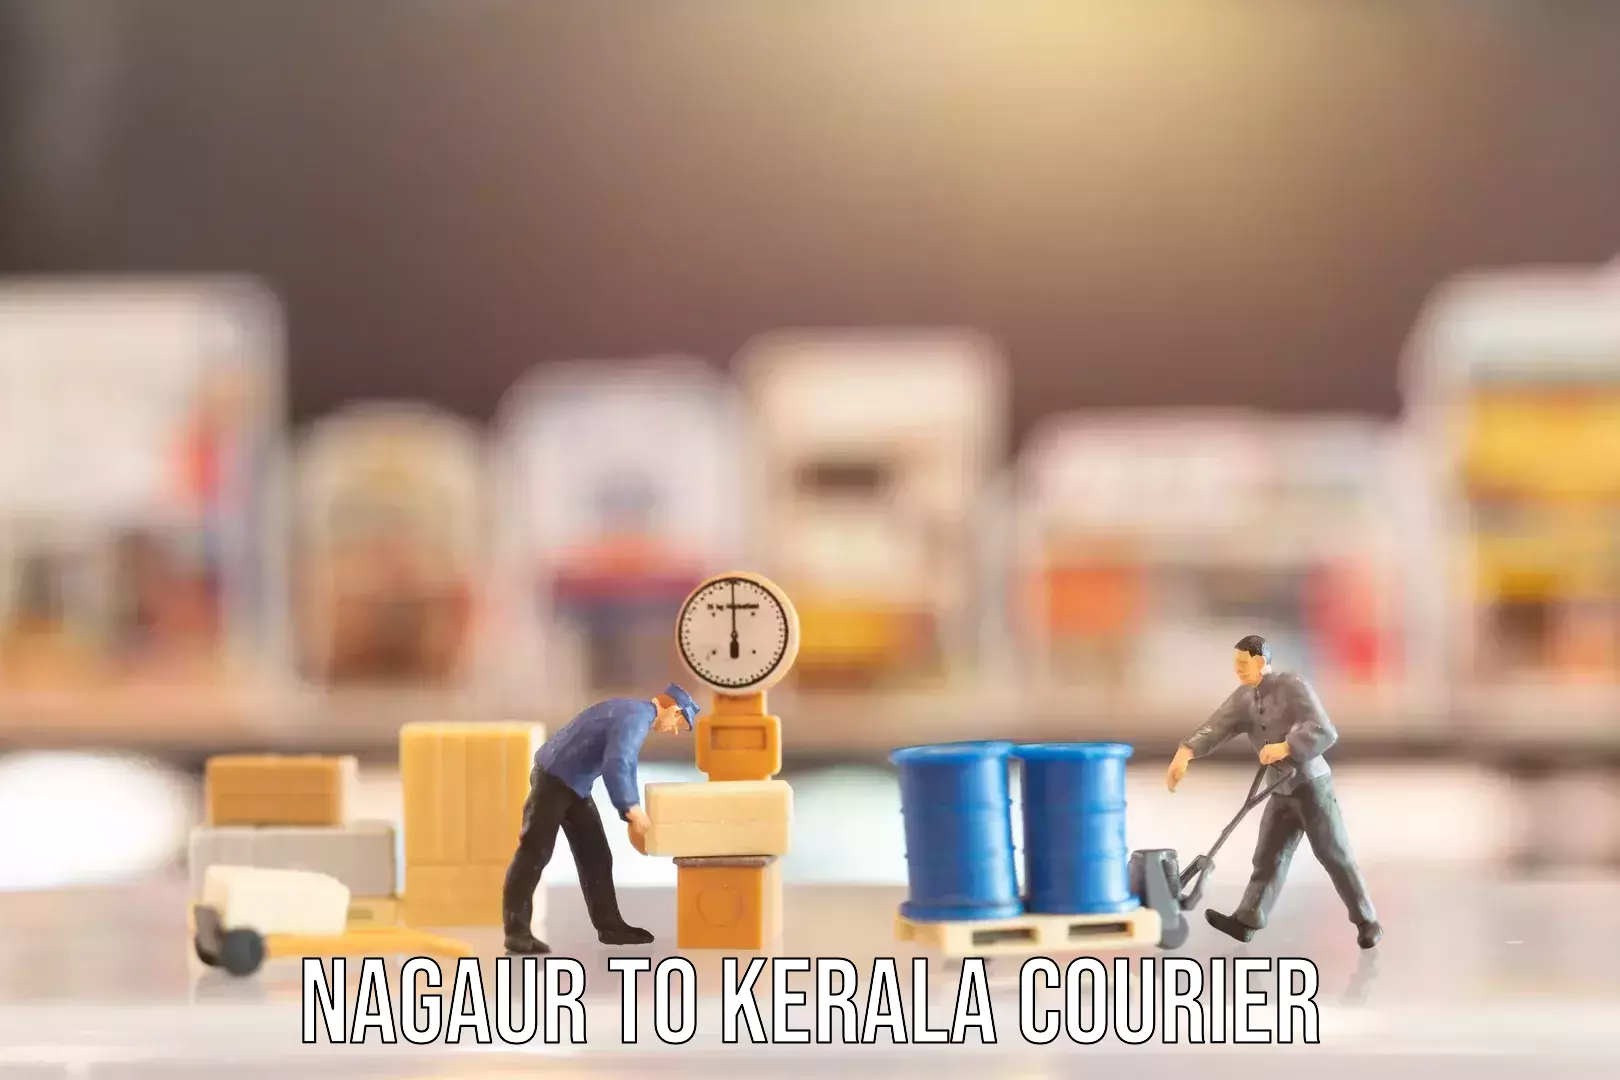 Baggage shipping experts Nagaur to Kerala